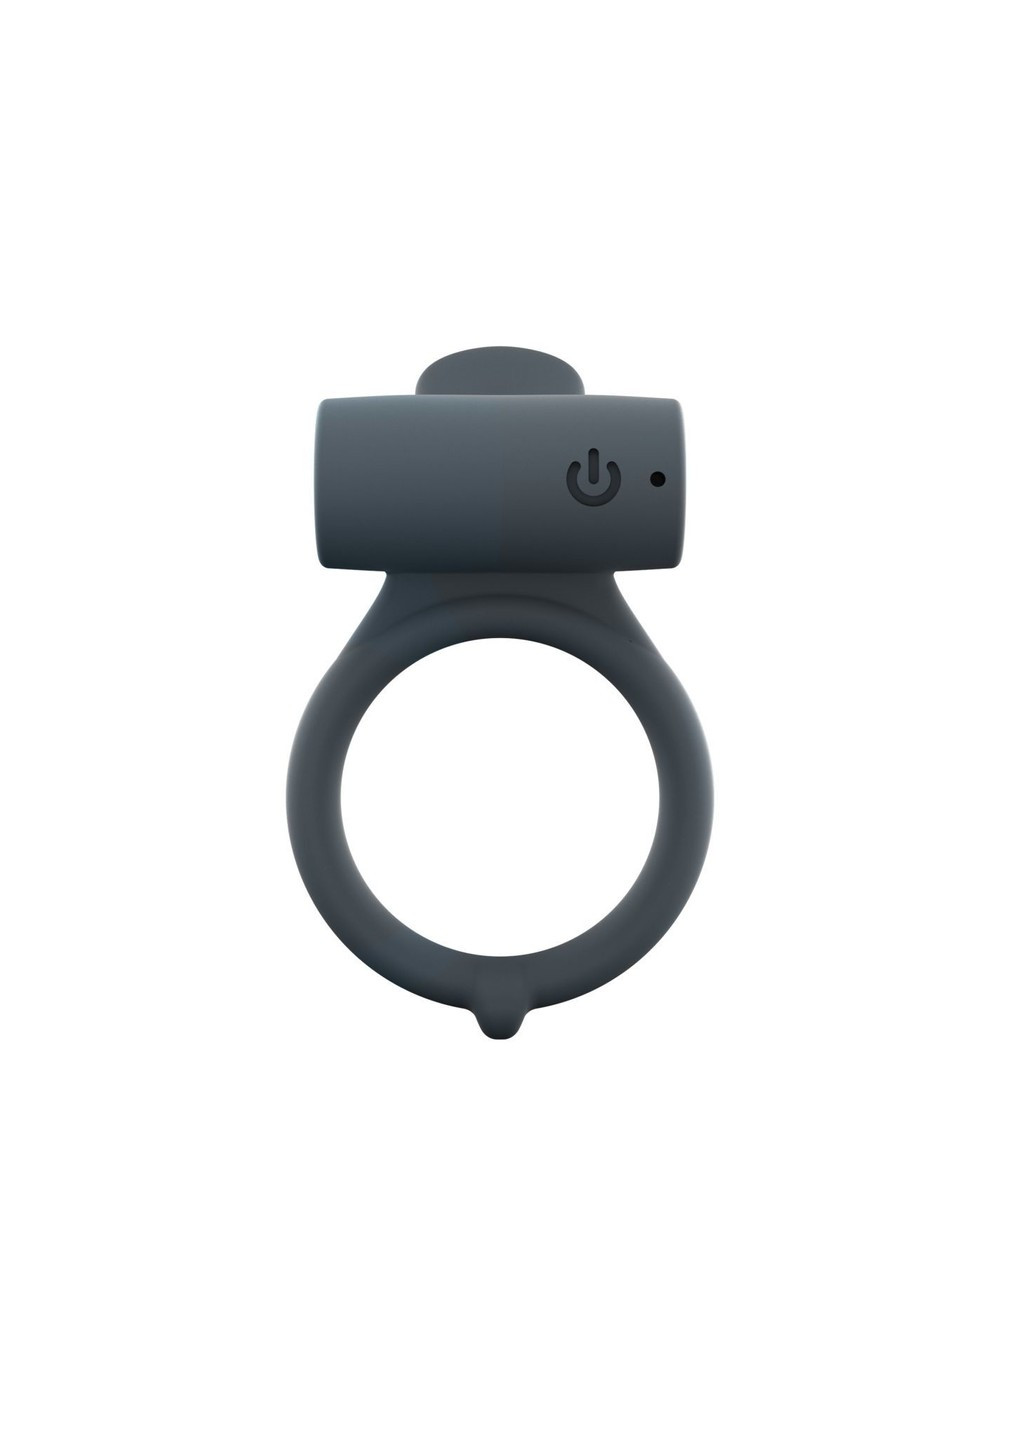 Эрекционное кольцо Power Clit Plus с вибрацией, перезаряжаемое, с язычком со щеточкой Dorcel (255073602)